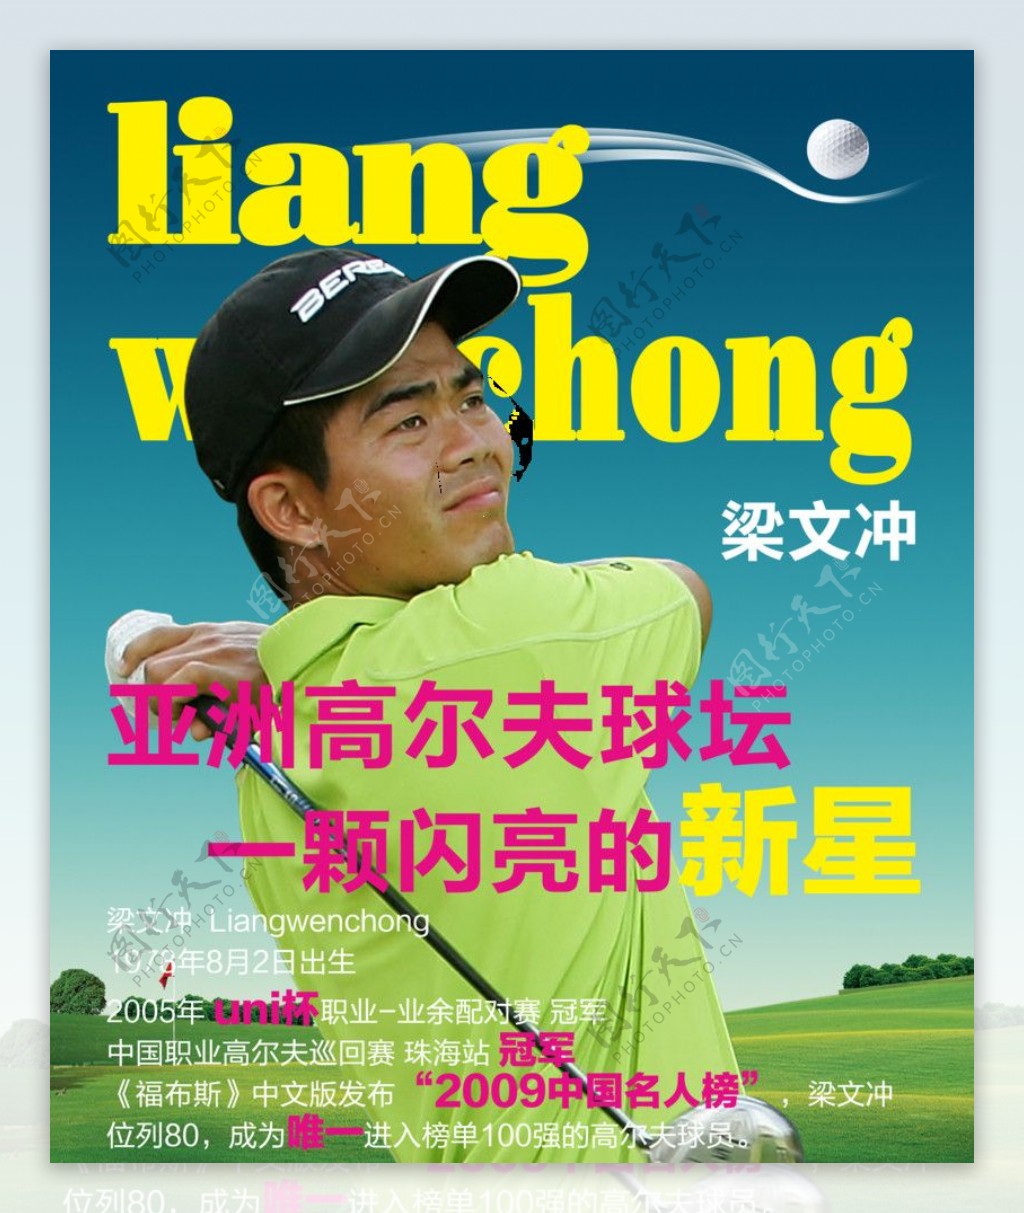 高尔夫杂志封面和高尔夫展板